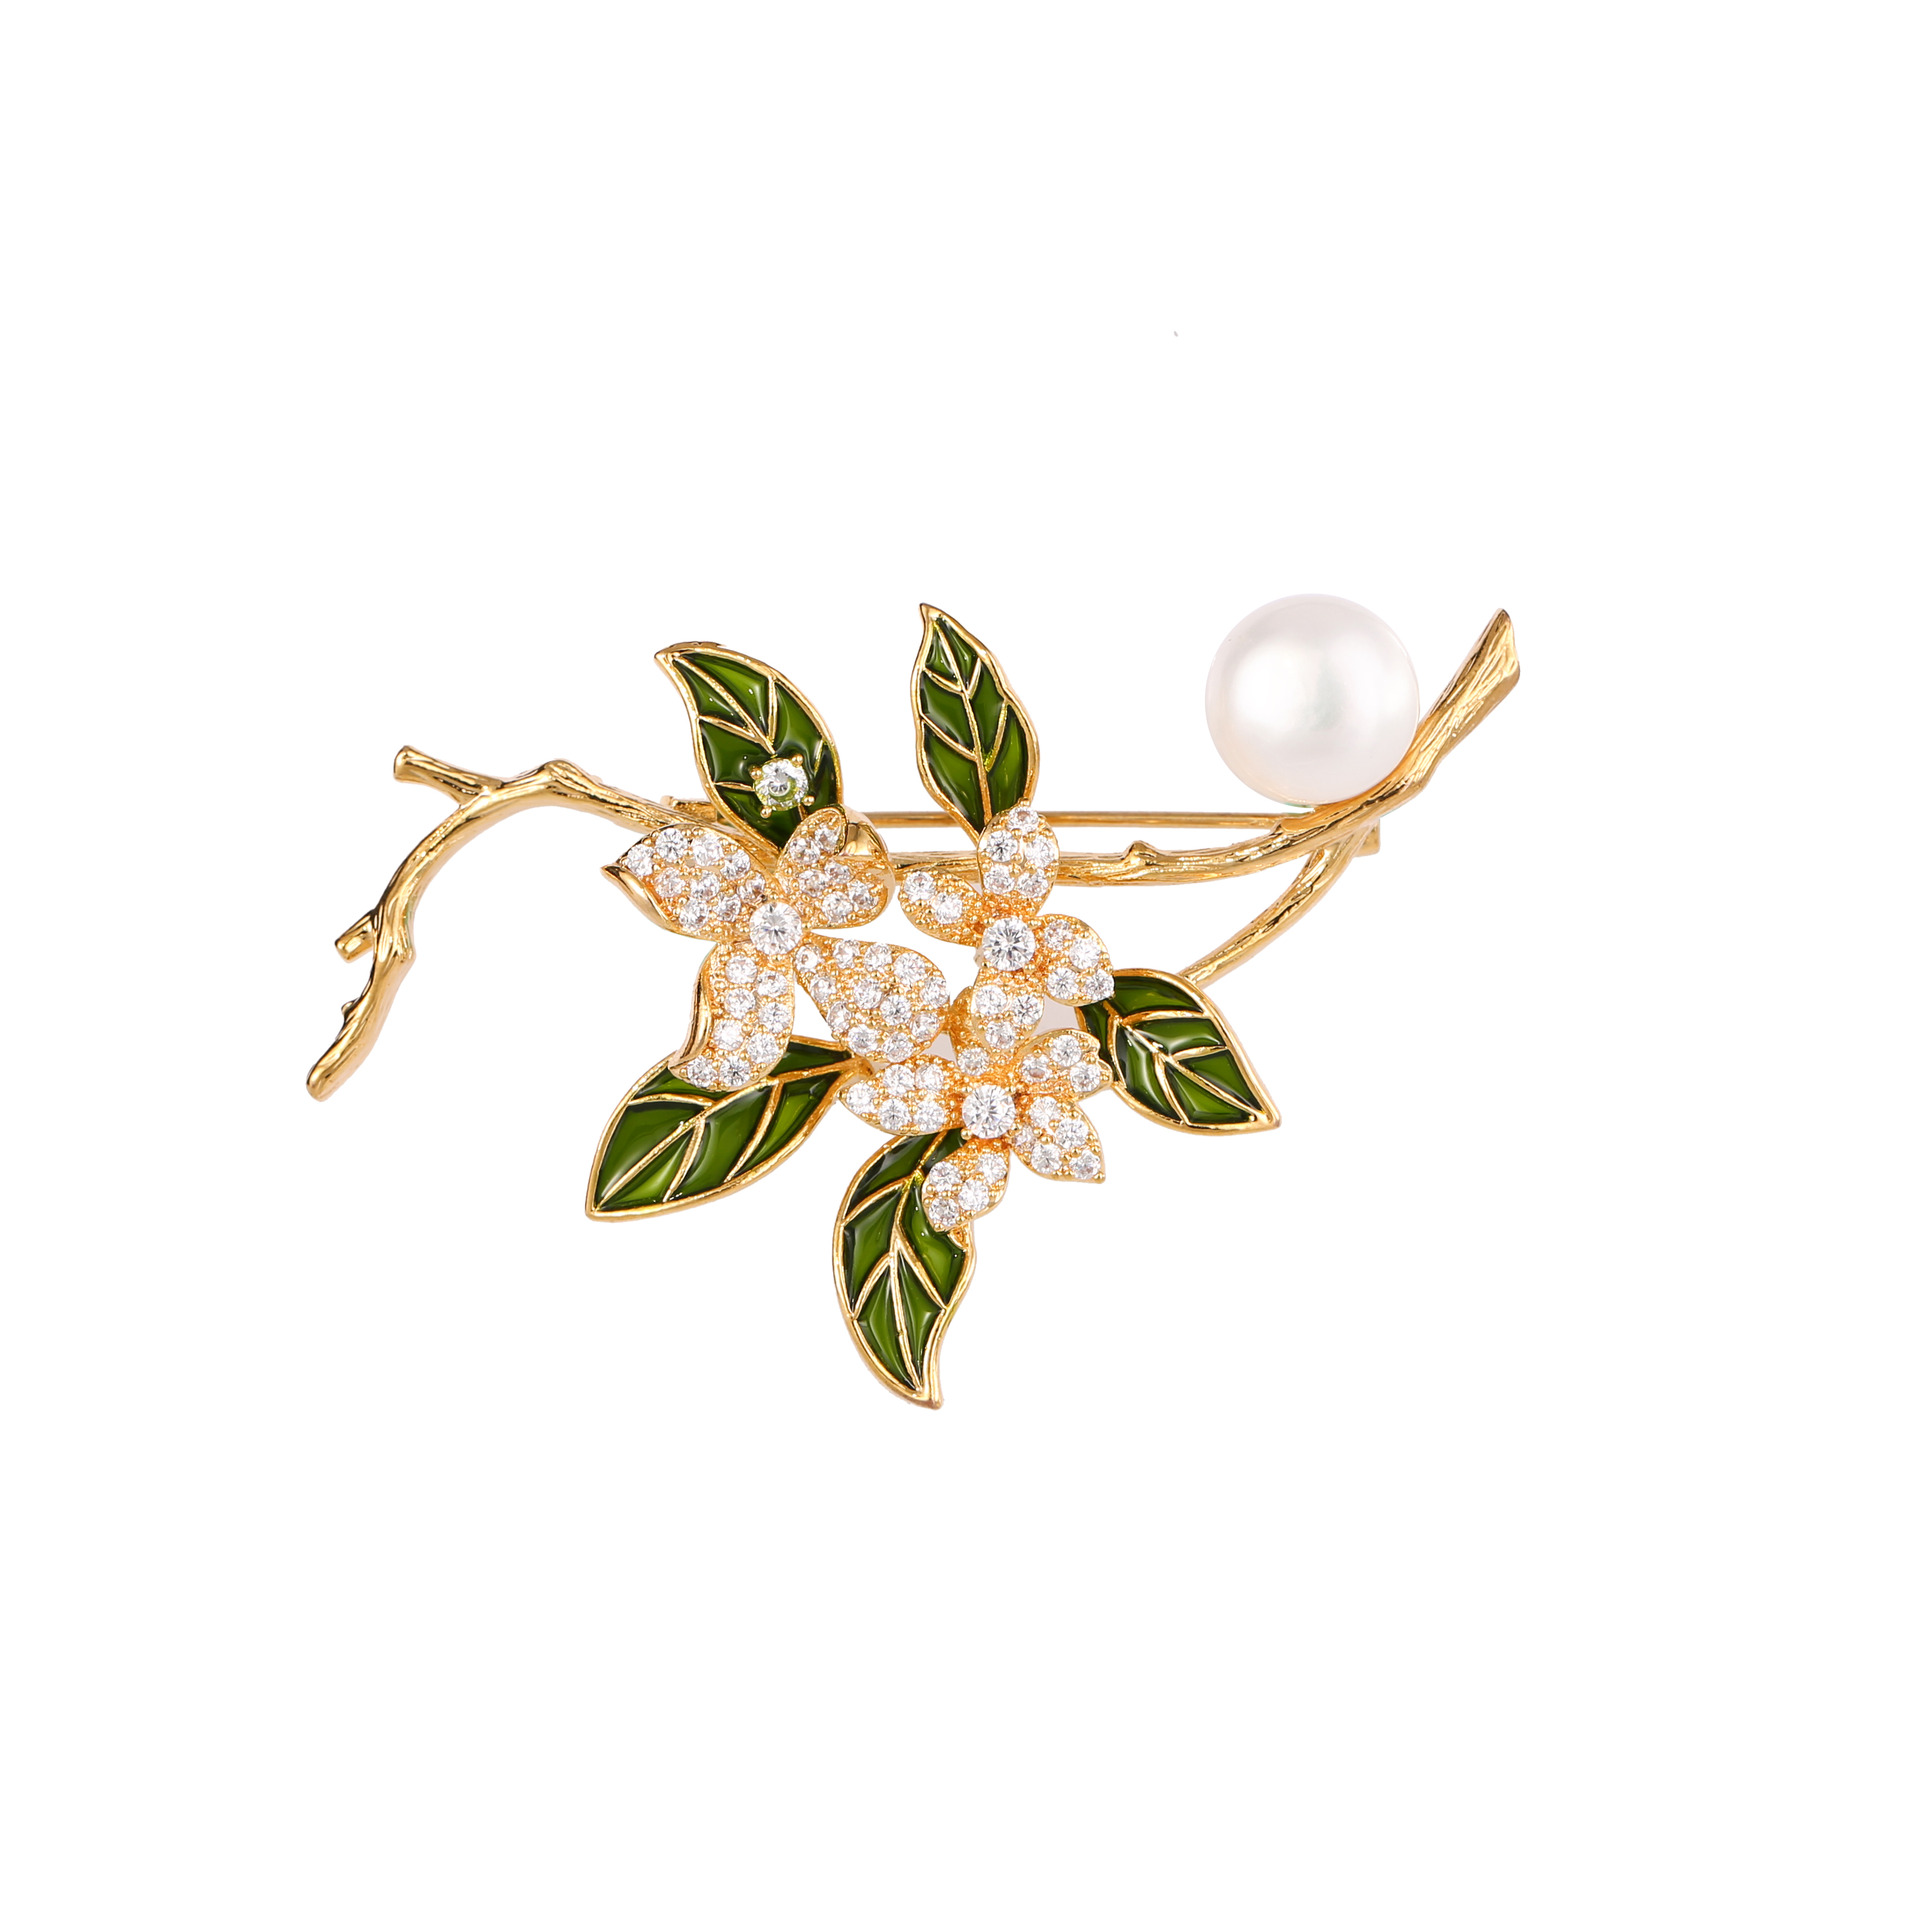 Zircon flower brooch pearl brooch pin for women girls ladies